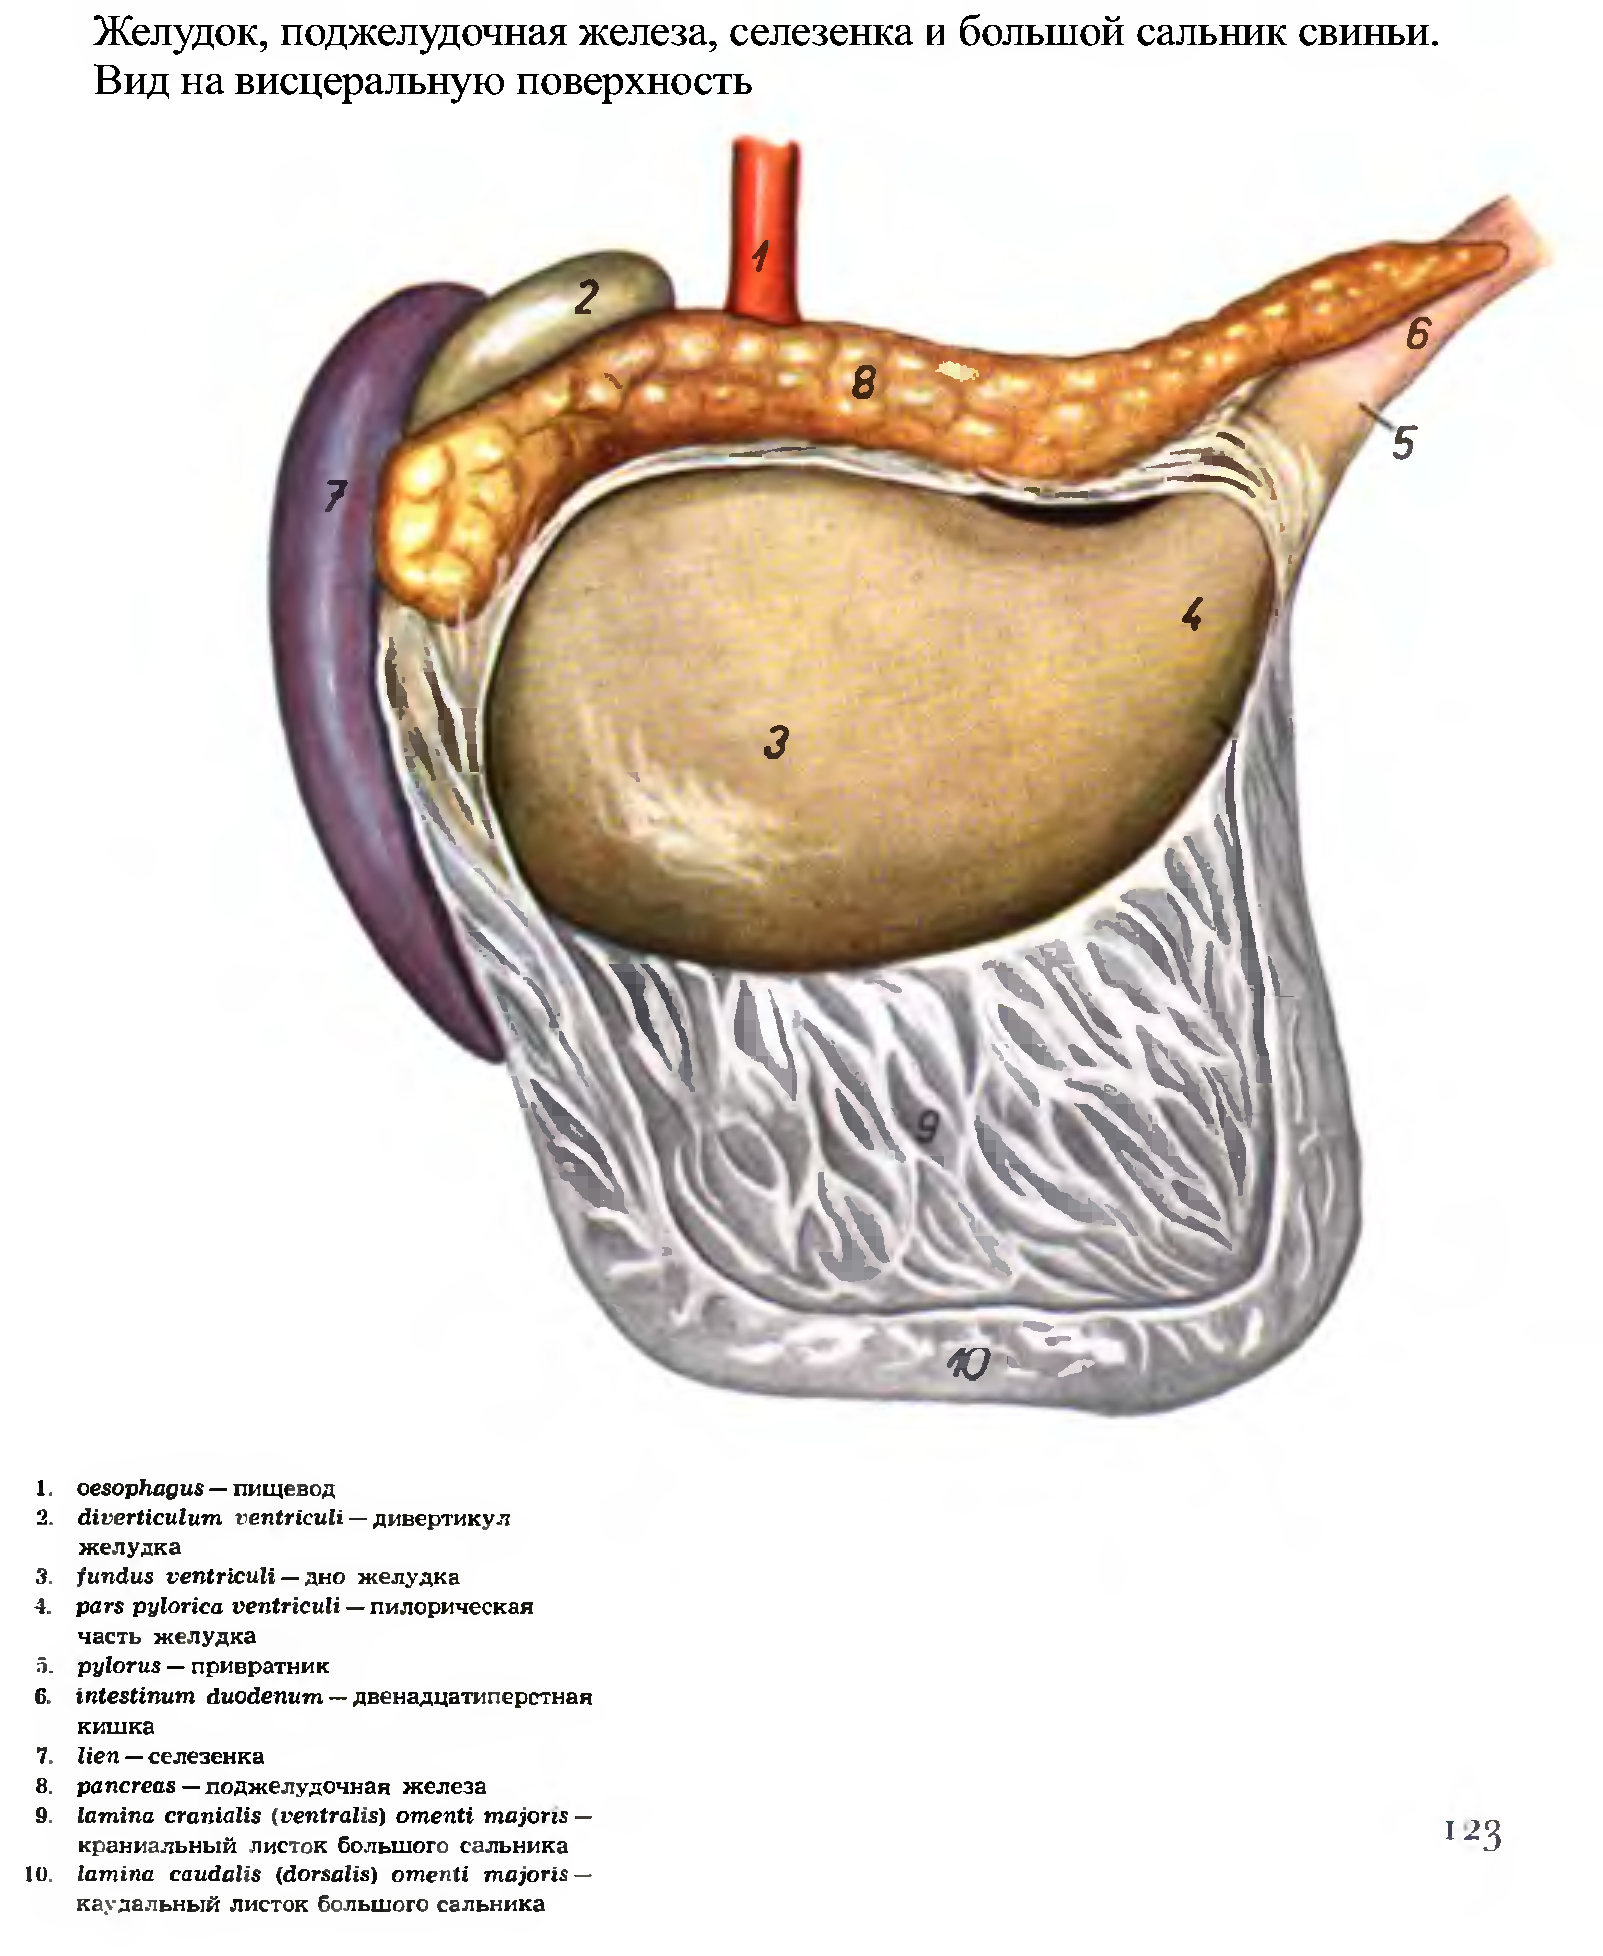 Анатомия желудка поджелудочной железы селезенки